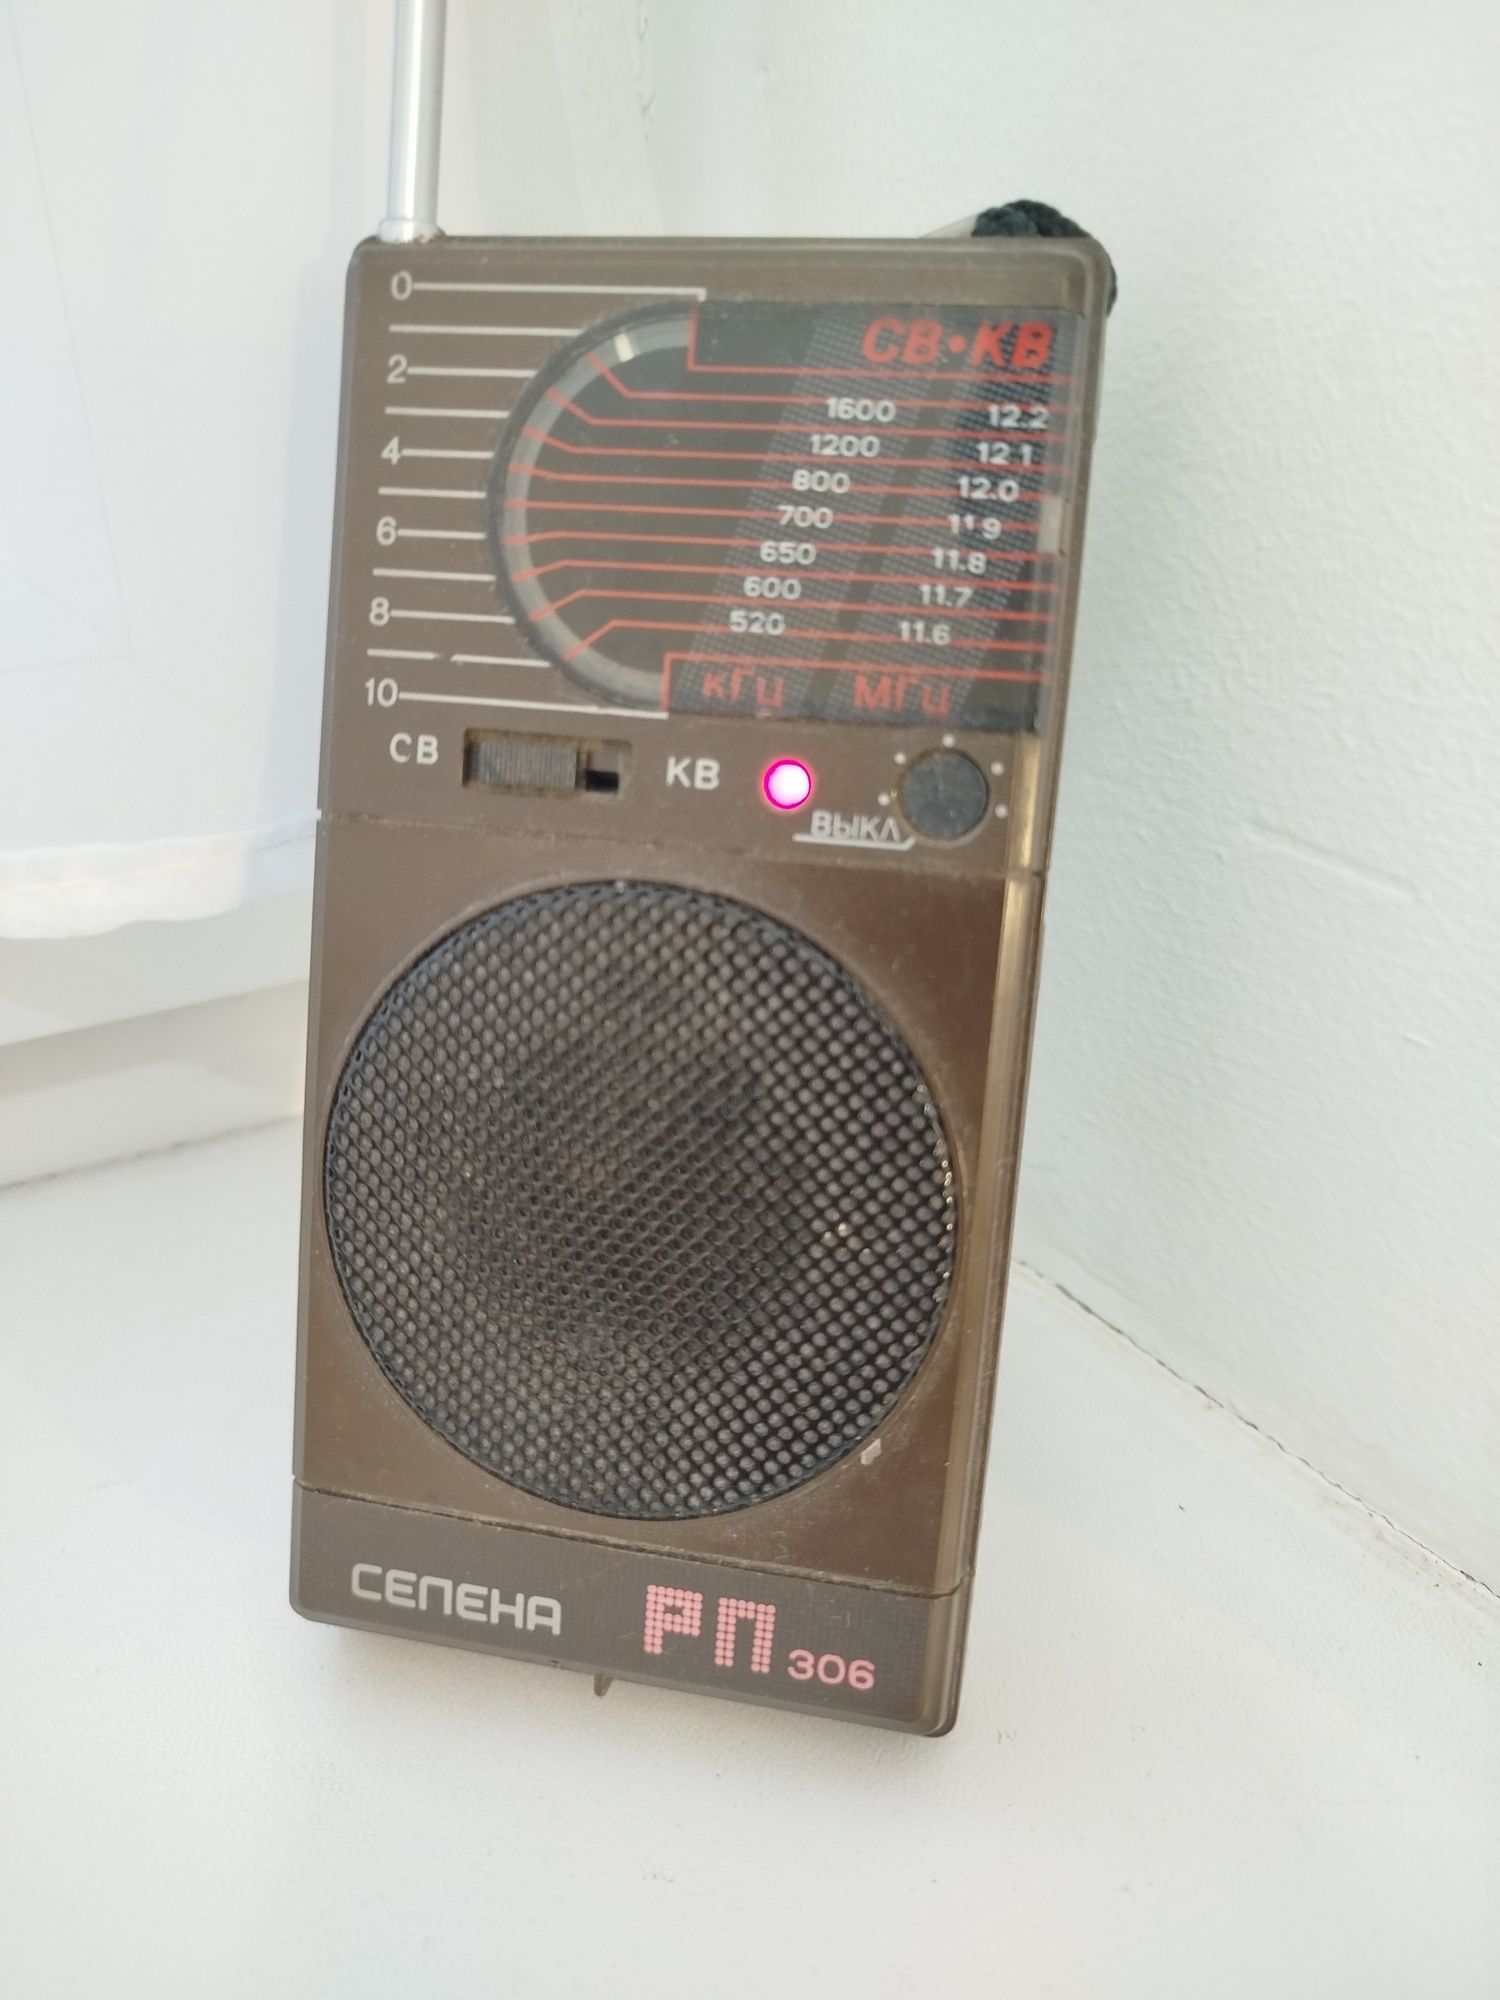 Продам радиоприемник селена рп 306